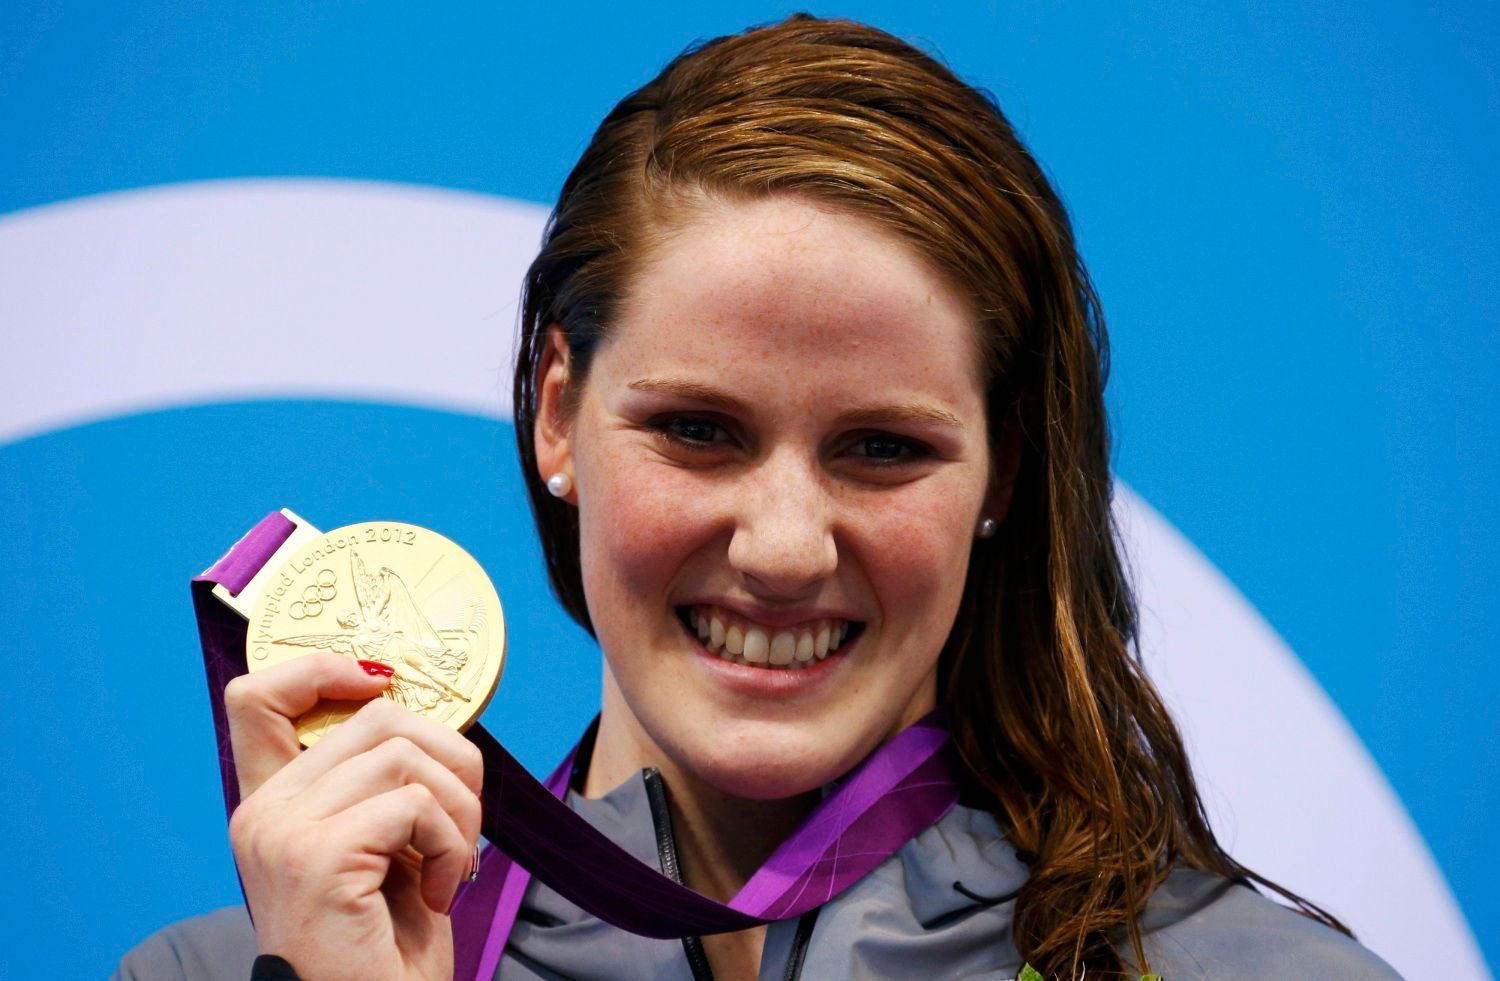 Americká plavkyně Missy Franklinová se raduje ze zlaté medaile za 100 metrů znak na OH 2012 v Londýně.